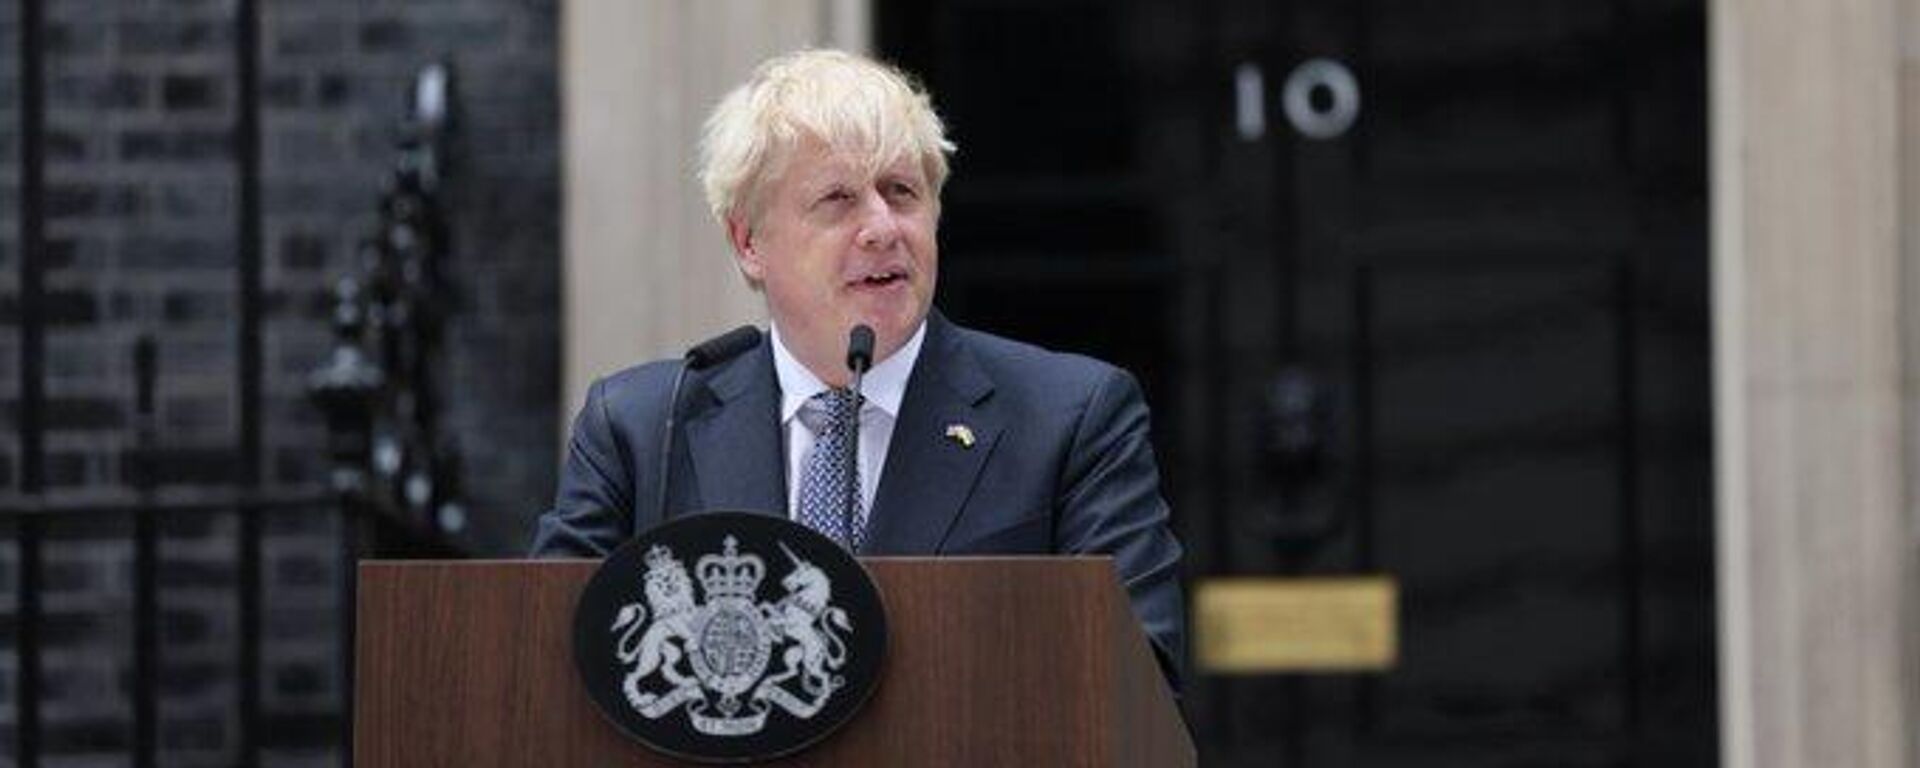 Renuncia de Boris Johnson como primer ministro del Reino Unido. - Sputnik Mundo, 1920, 07.07.2022